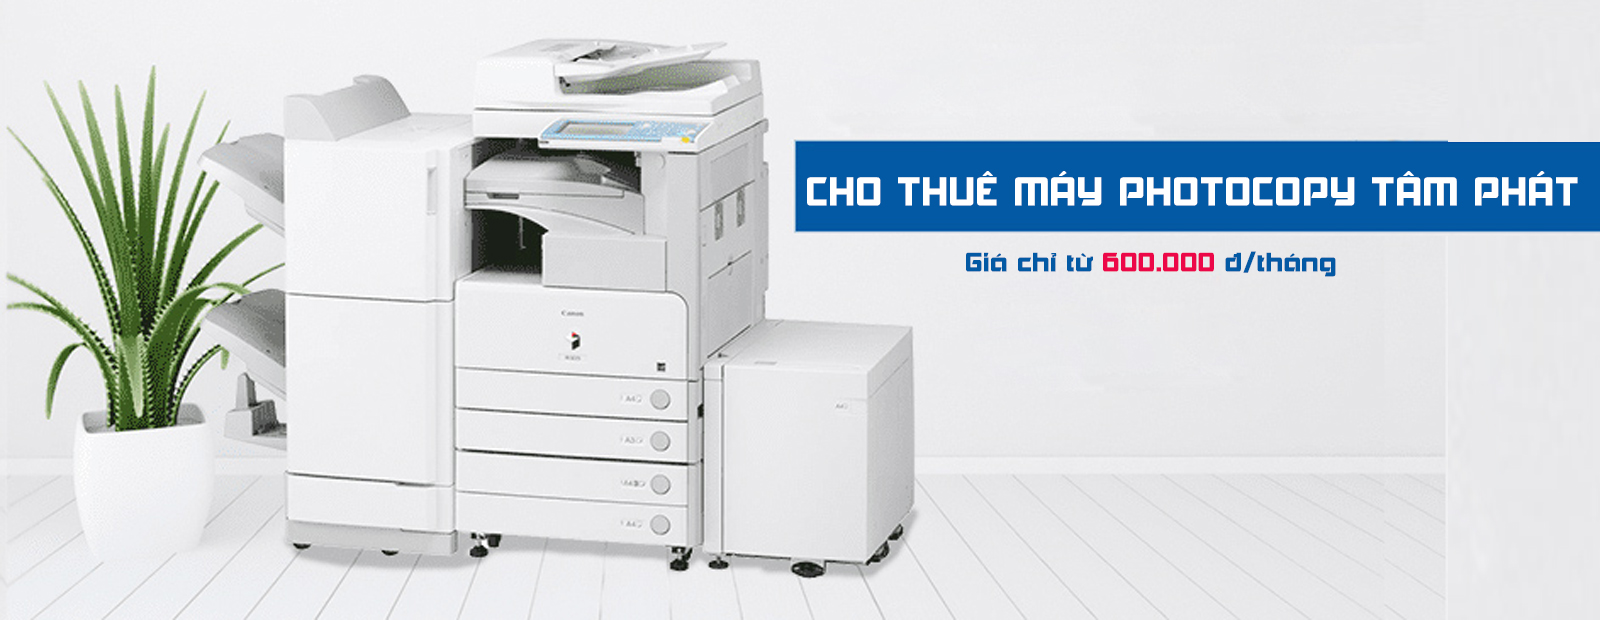 cho thue may photocopy 